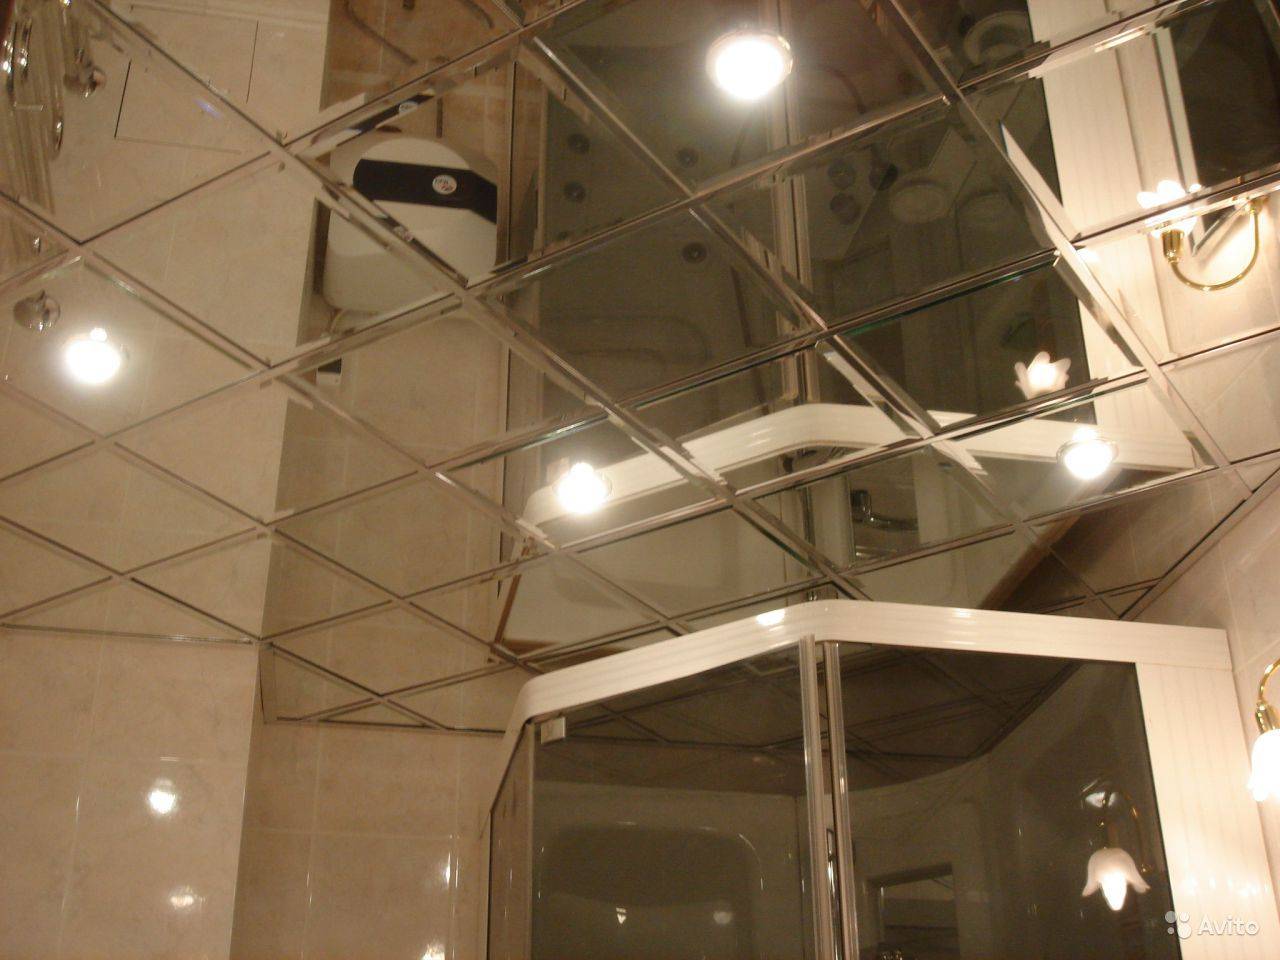 Зеркальный потолок в ванной — фото и видео лучших идей размещения зеркальных поверхностей